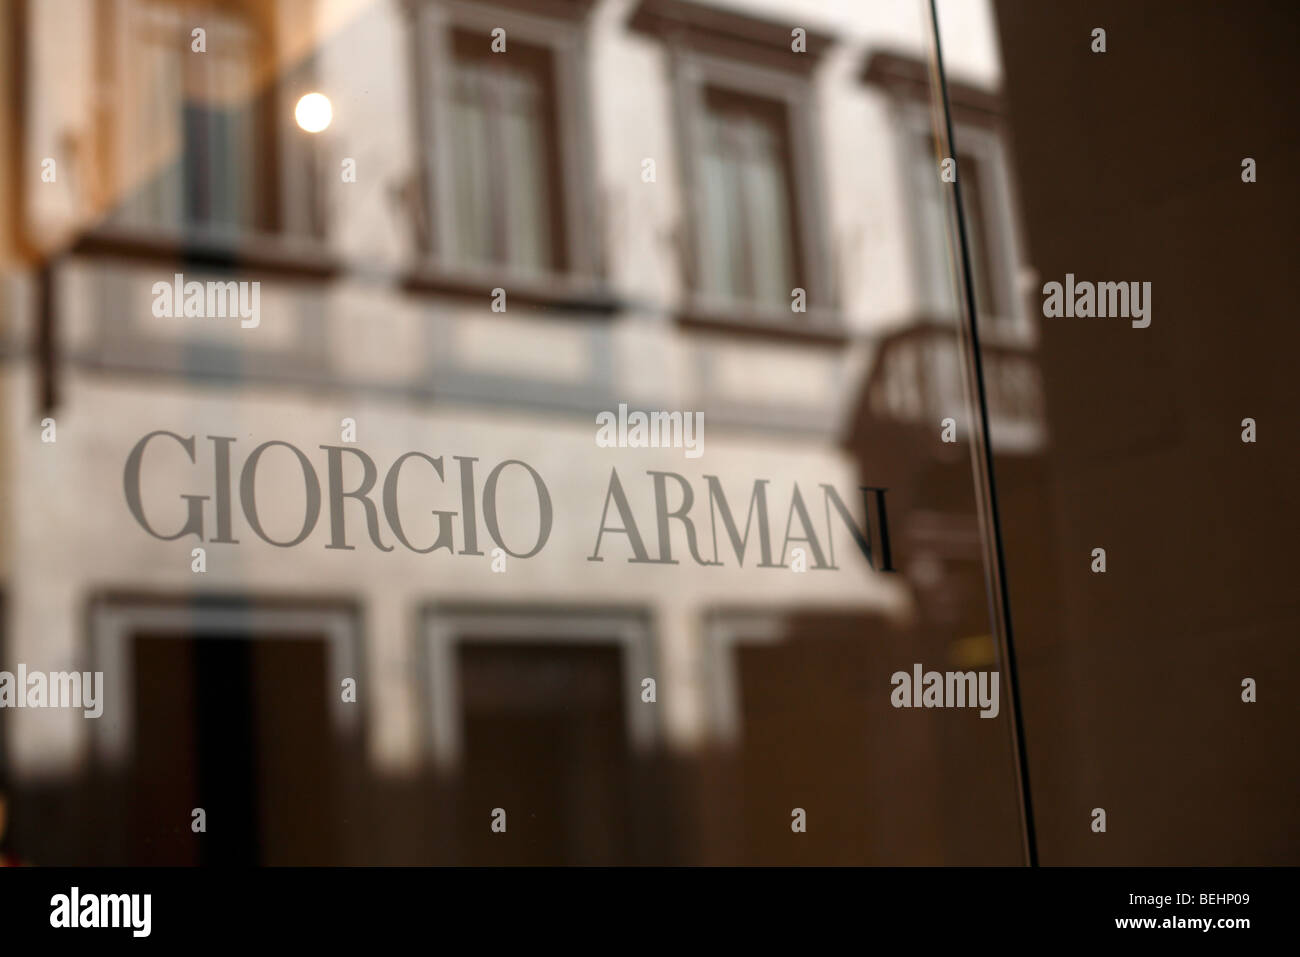 Zeichen für eine Giorgio Armani Store in Florenz oder Firenze in Italien  Stockfotografie - Alamy